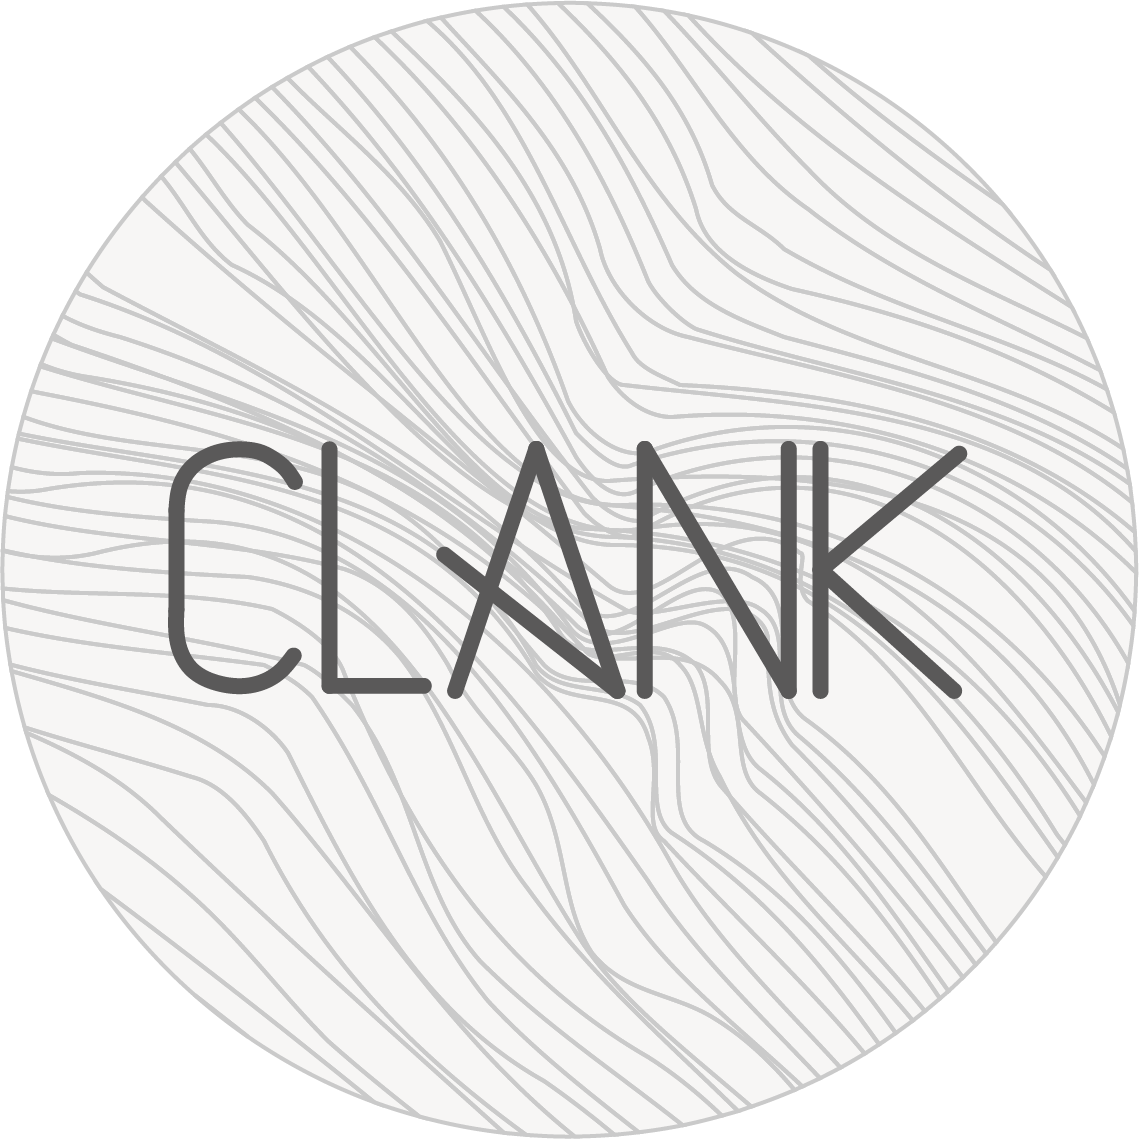 www.clank.eu